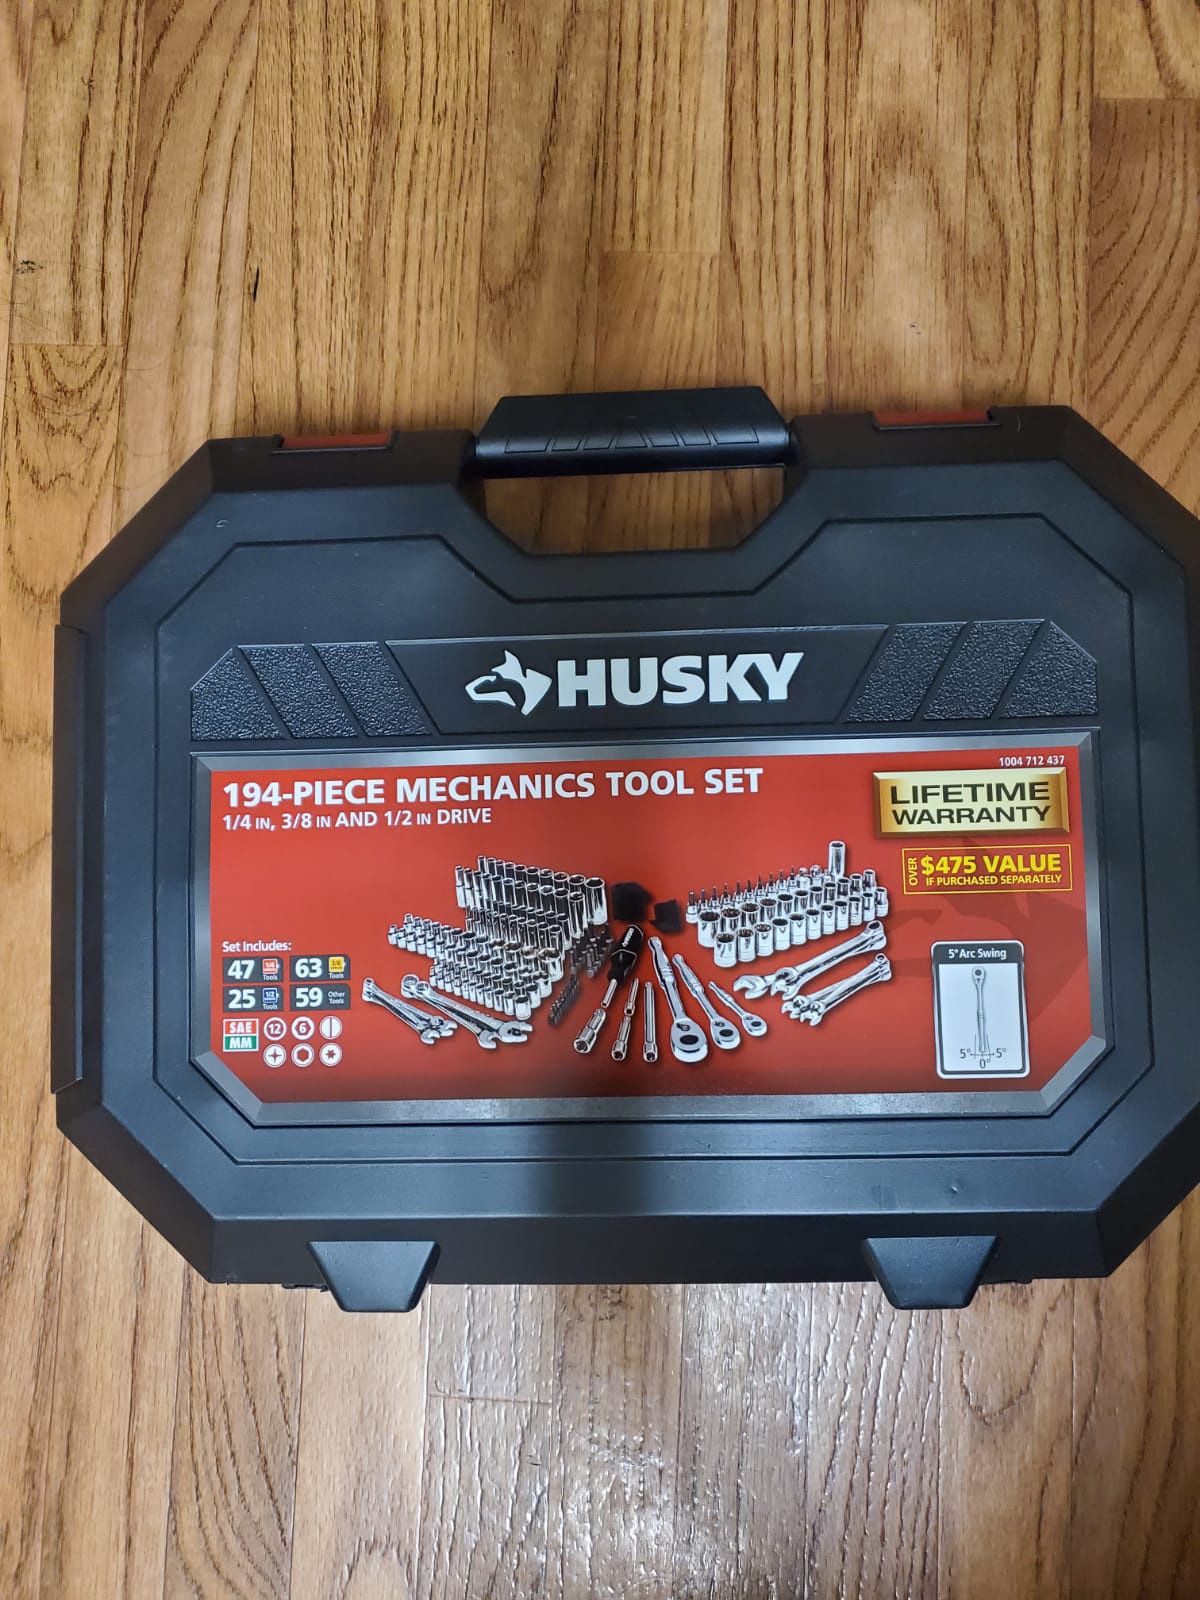 BRAND NEW, Husky Mechanics Tool Set (194-Piece)NUEVO